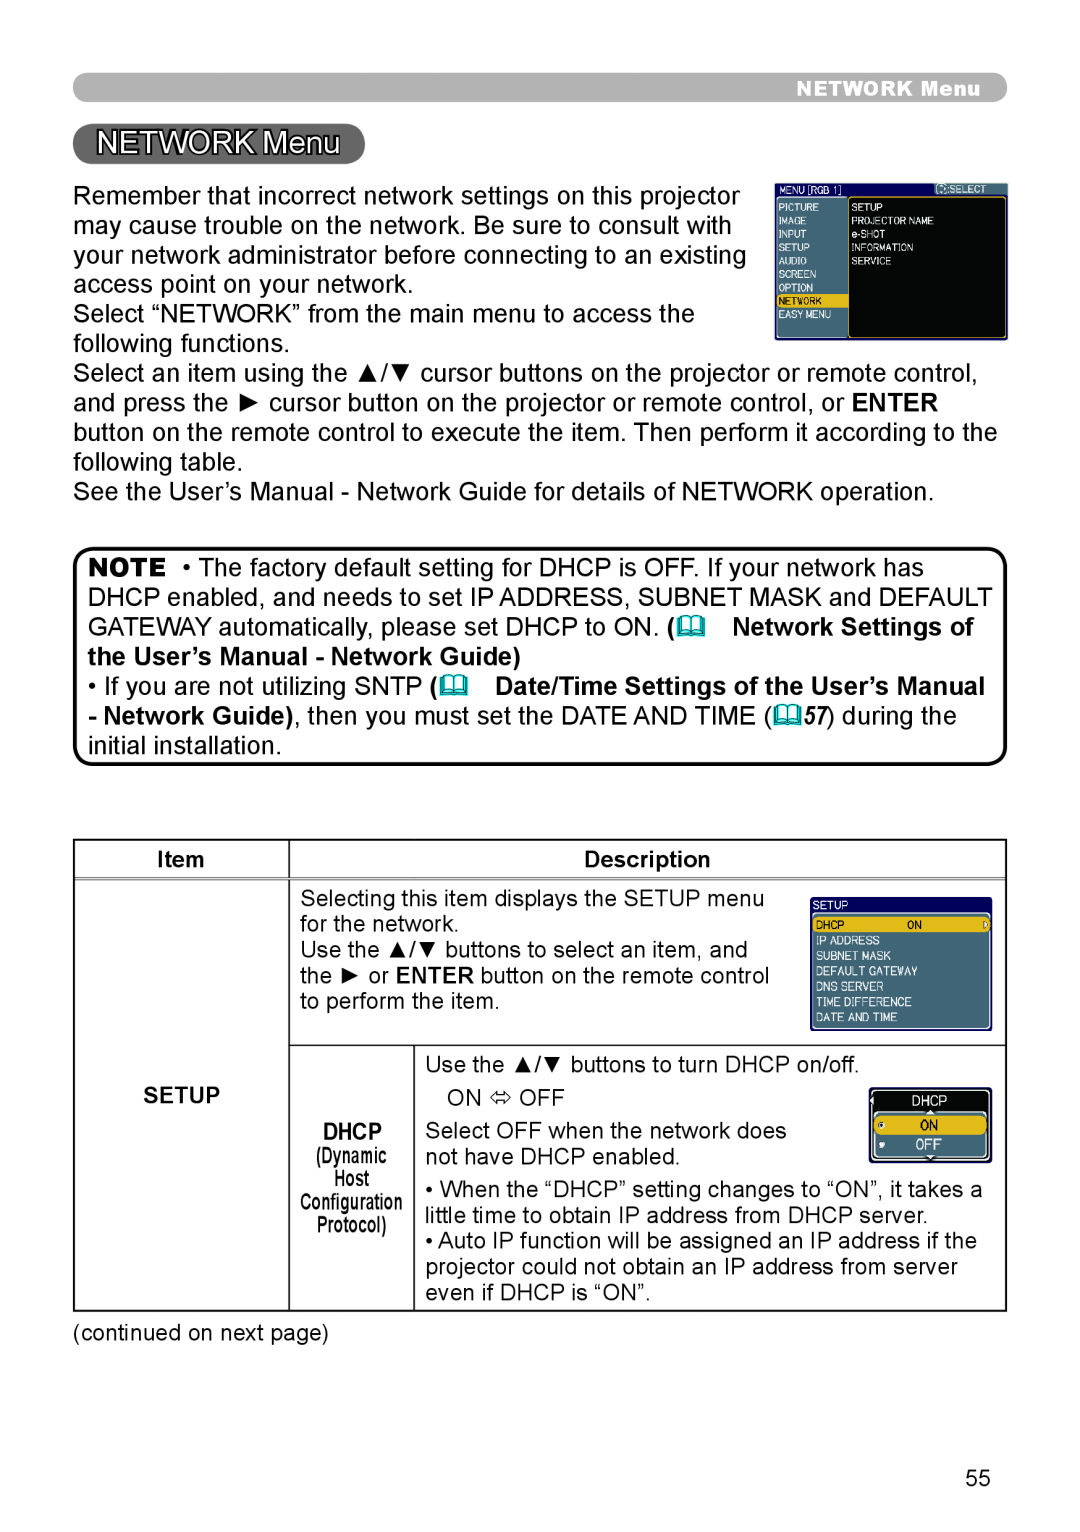 Planar PR9020 user manual NETWORK Menu, the User’s Manual - Network Guide 